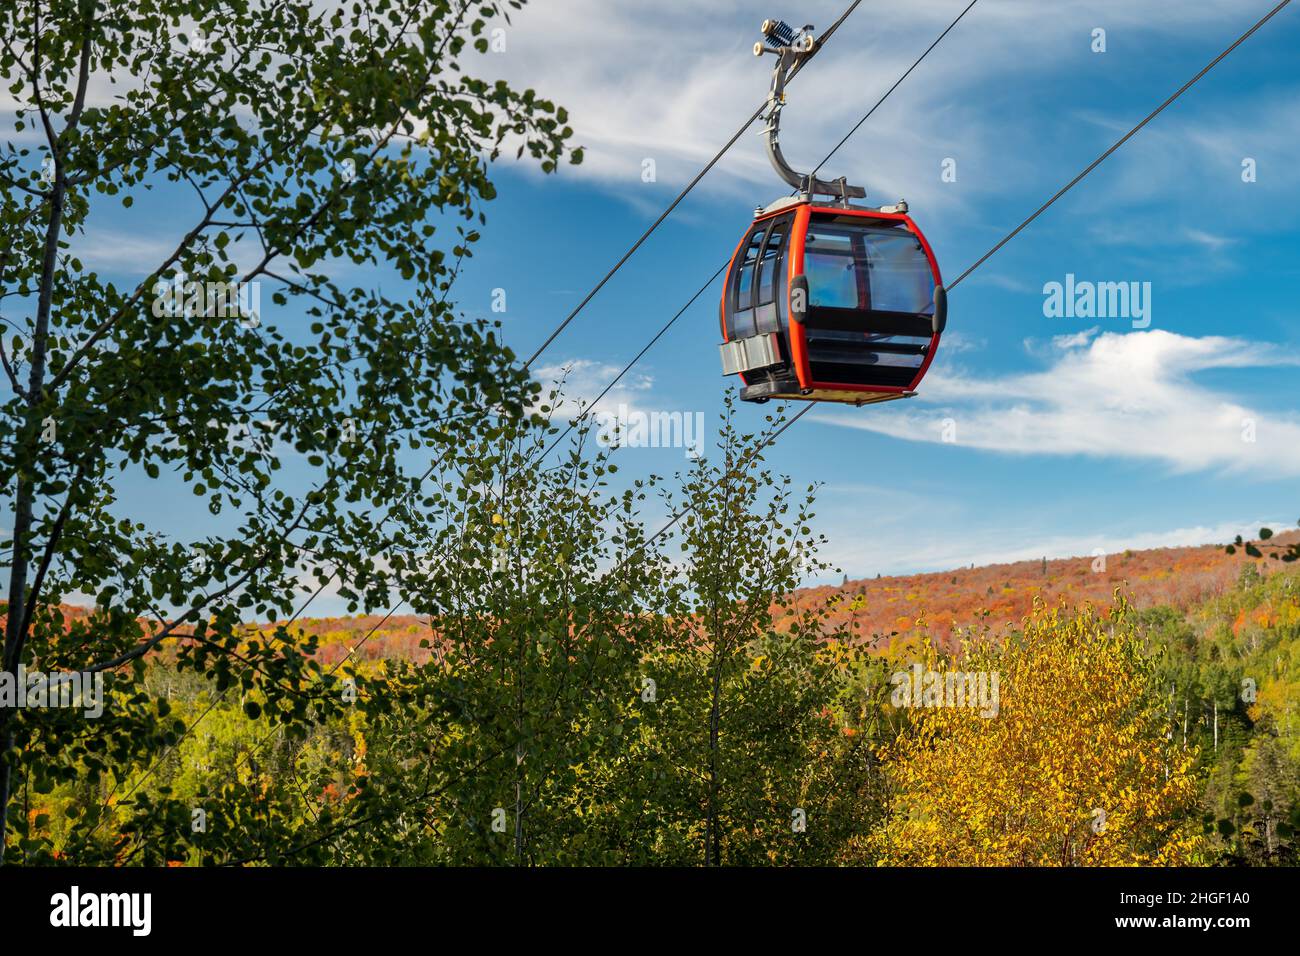 Die Seilbahn auf einer Seilbahn führt an nahe gelegenen Bäumen an einem Skihang in Minnesota vorbei, mit Herbstfarben auf dem fernen Hügel und meist blauem Himmel. Stockfoto